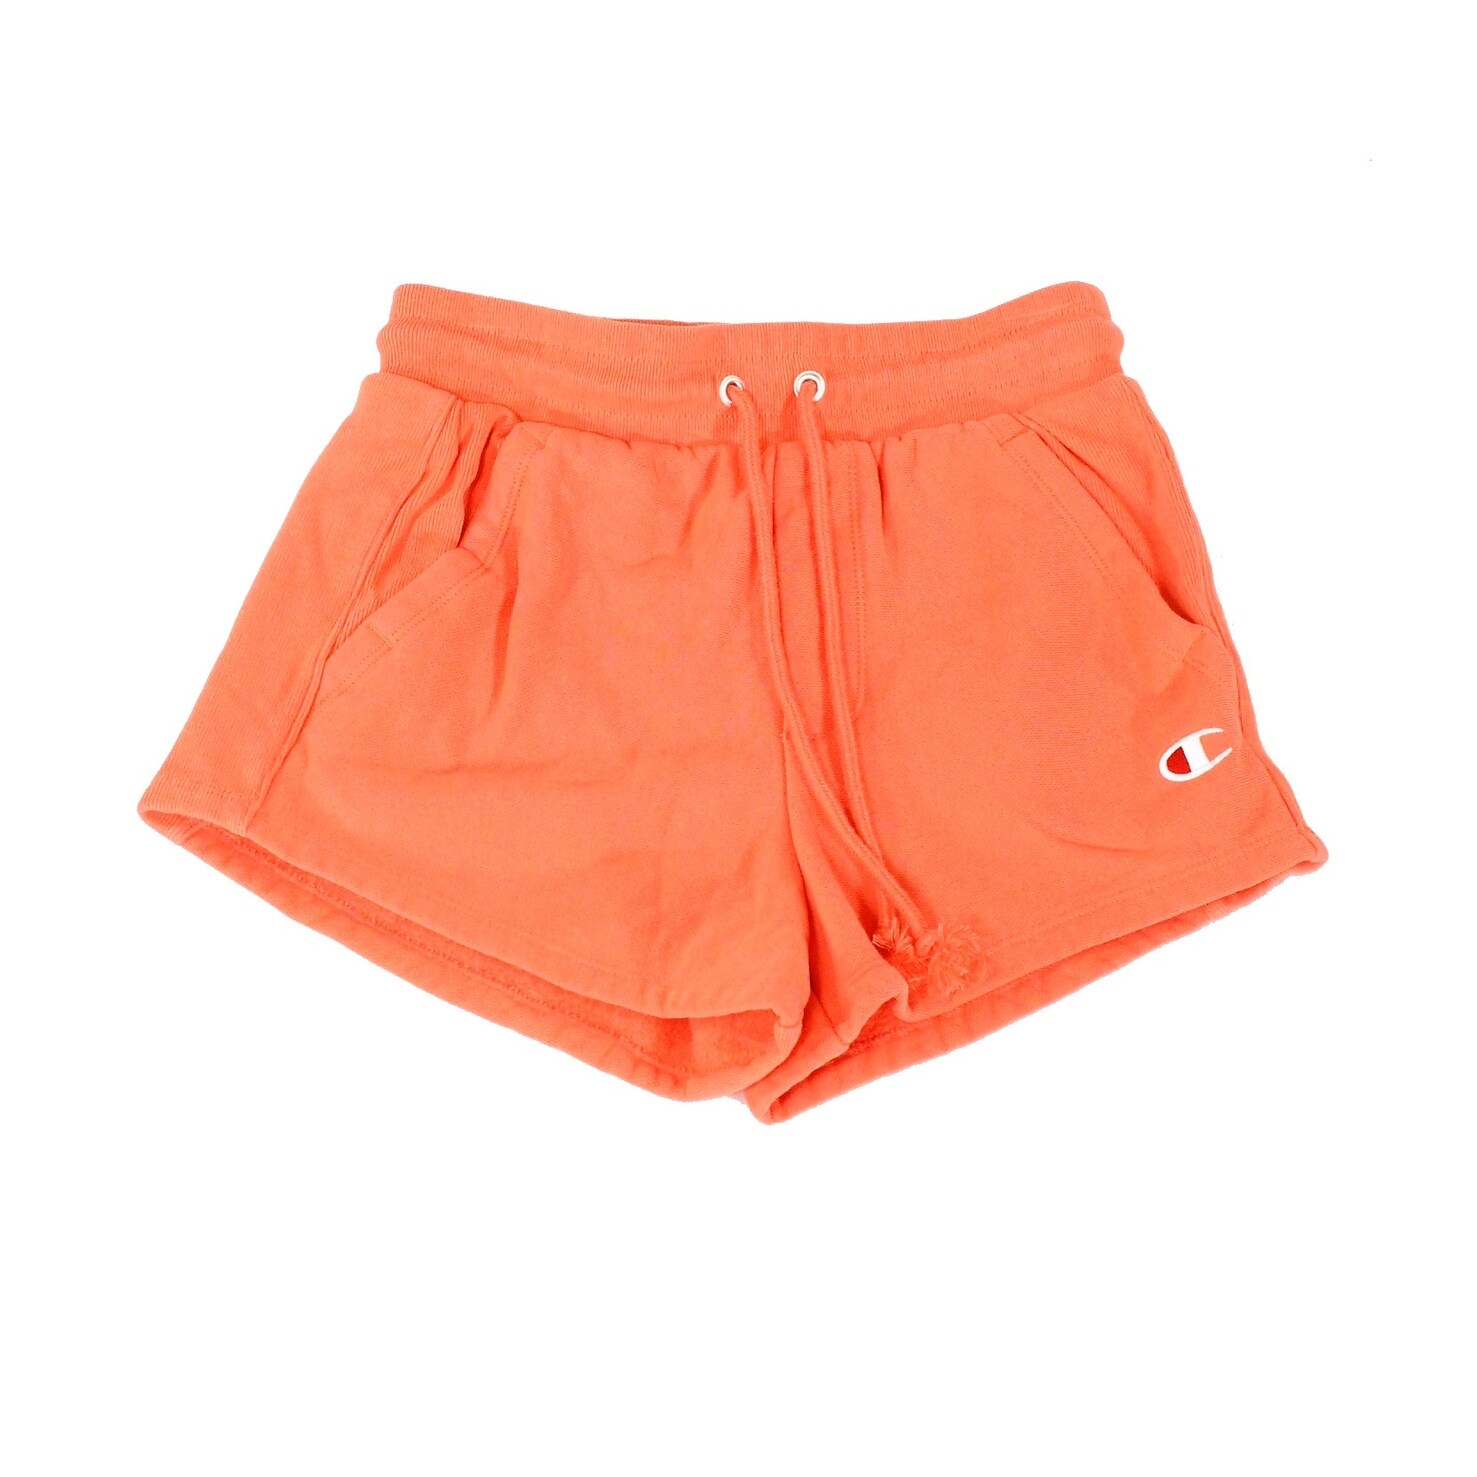 coral champion shorts